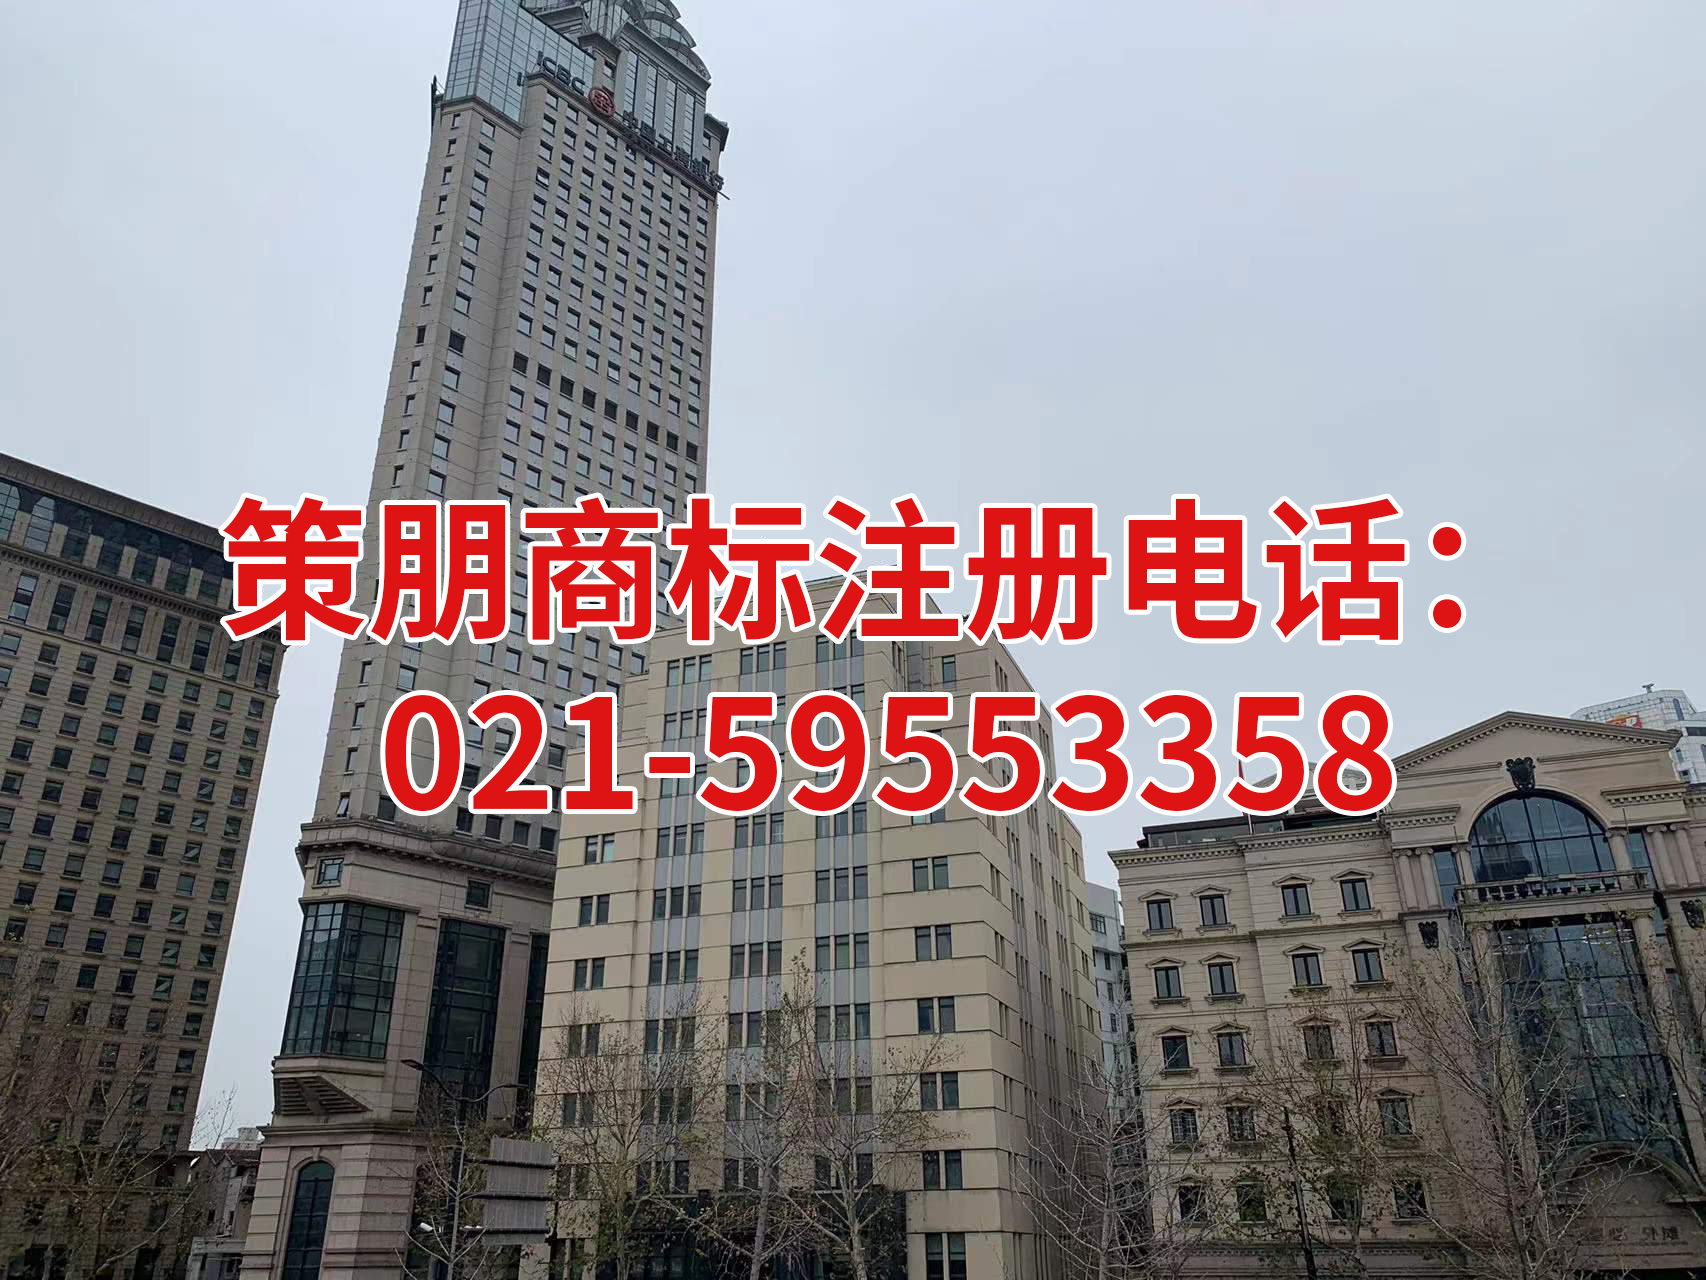 上海崇明区商标代理机构指派专业人员一对一全程办理，在中国申请注册一个商标需要花费多少钱？